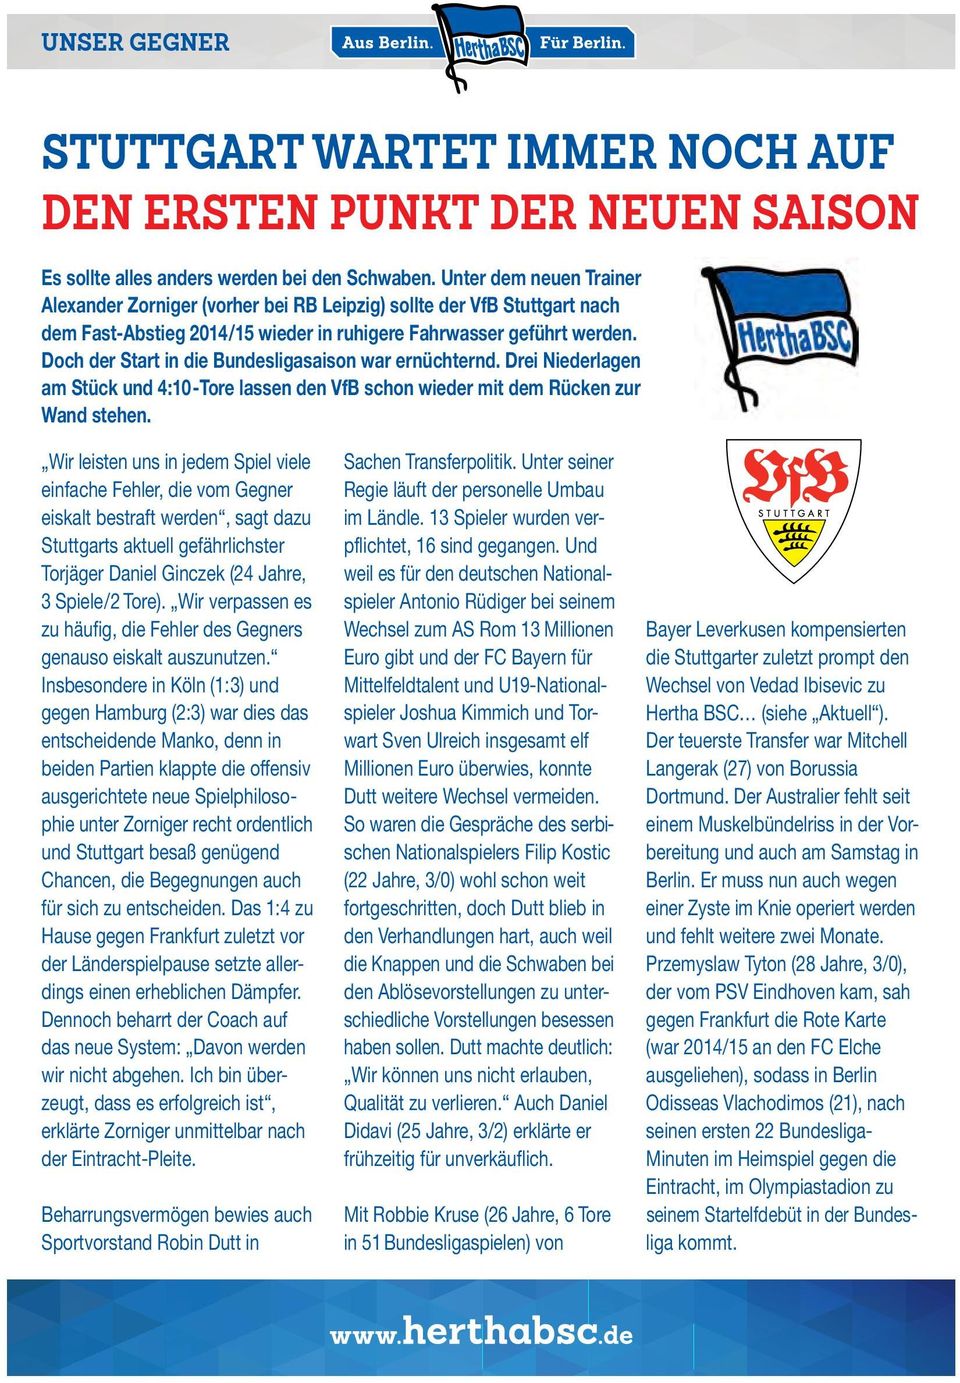 Doch der Start in die Bundesligasaison war ernüchternd. Drei Niederlagen am Stück und 4:10-Tore lassen den VfB schon wieder mit dem Rücken zur Wand stehen.